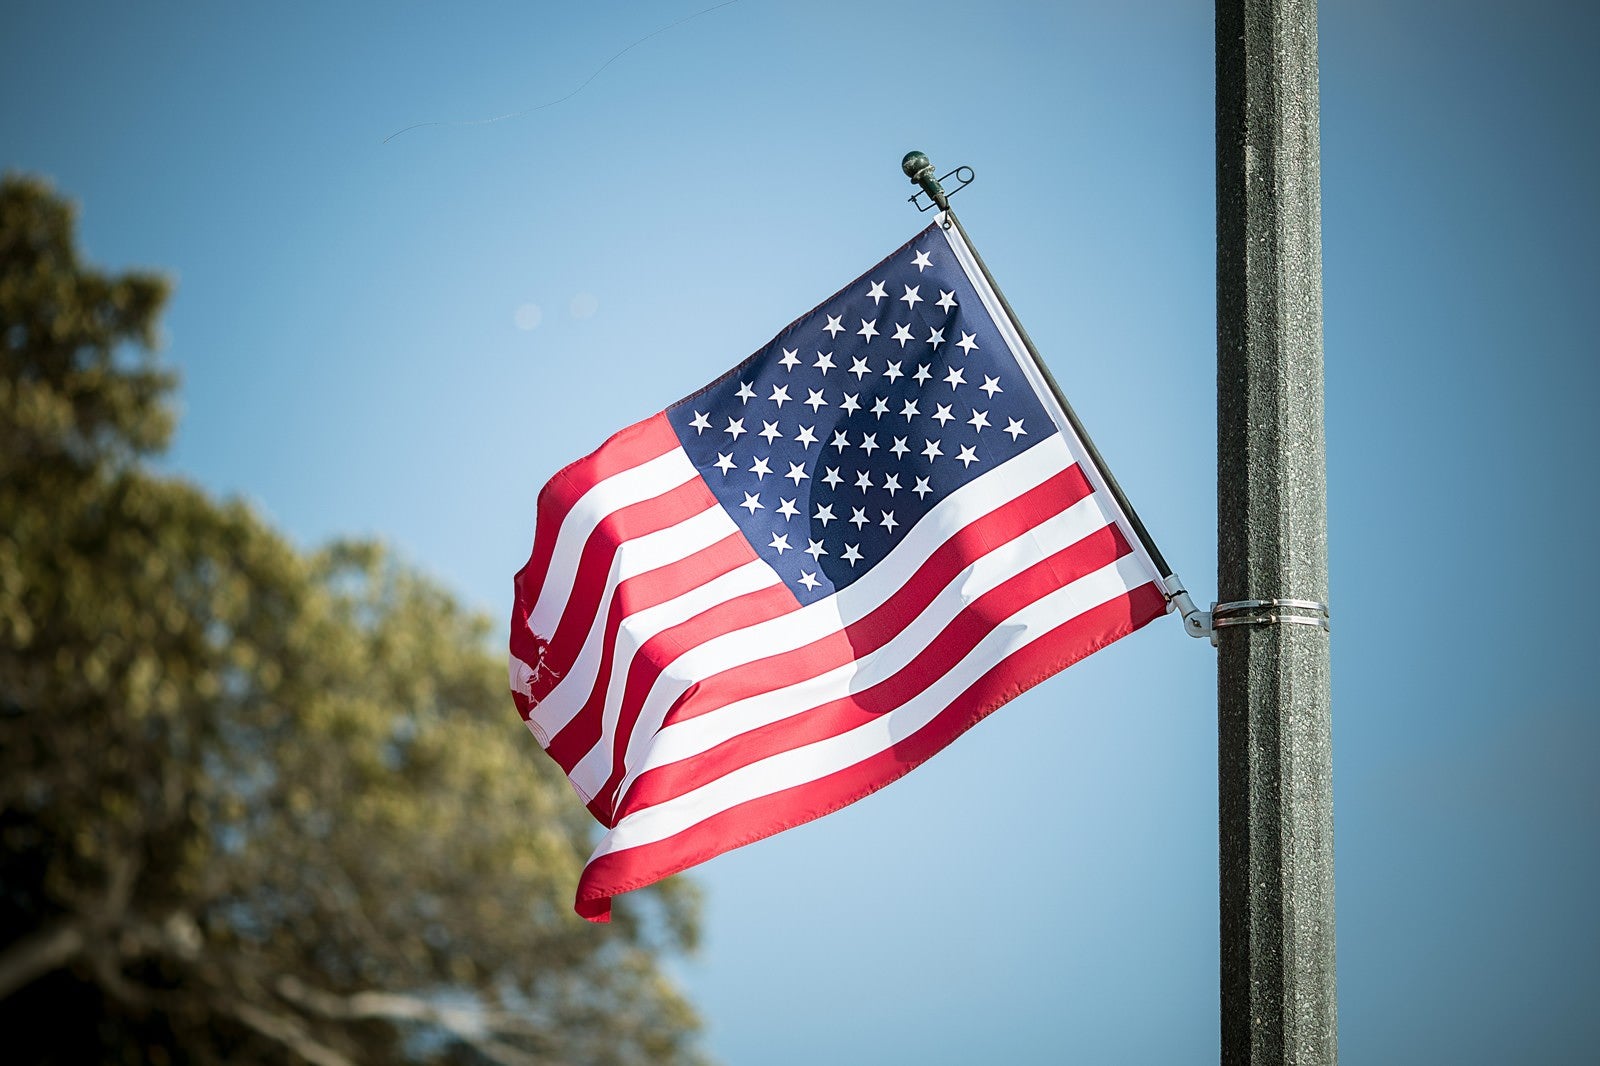 「風になびくアメリカの国旗」の写真